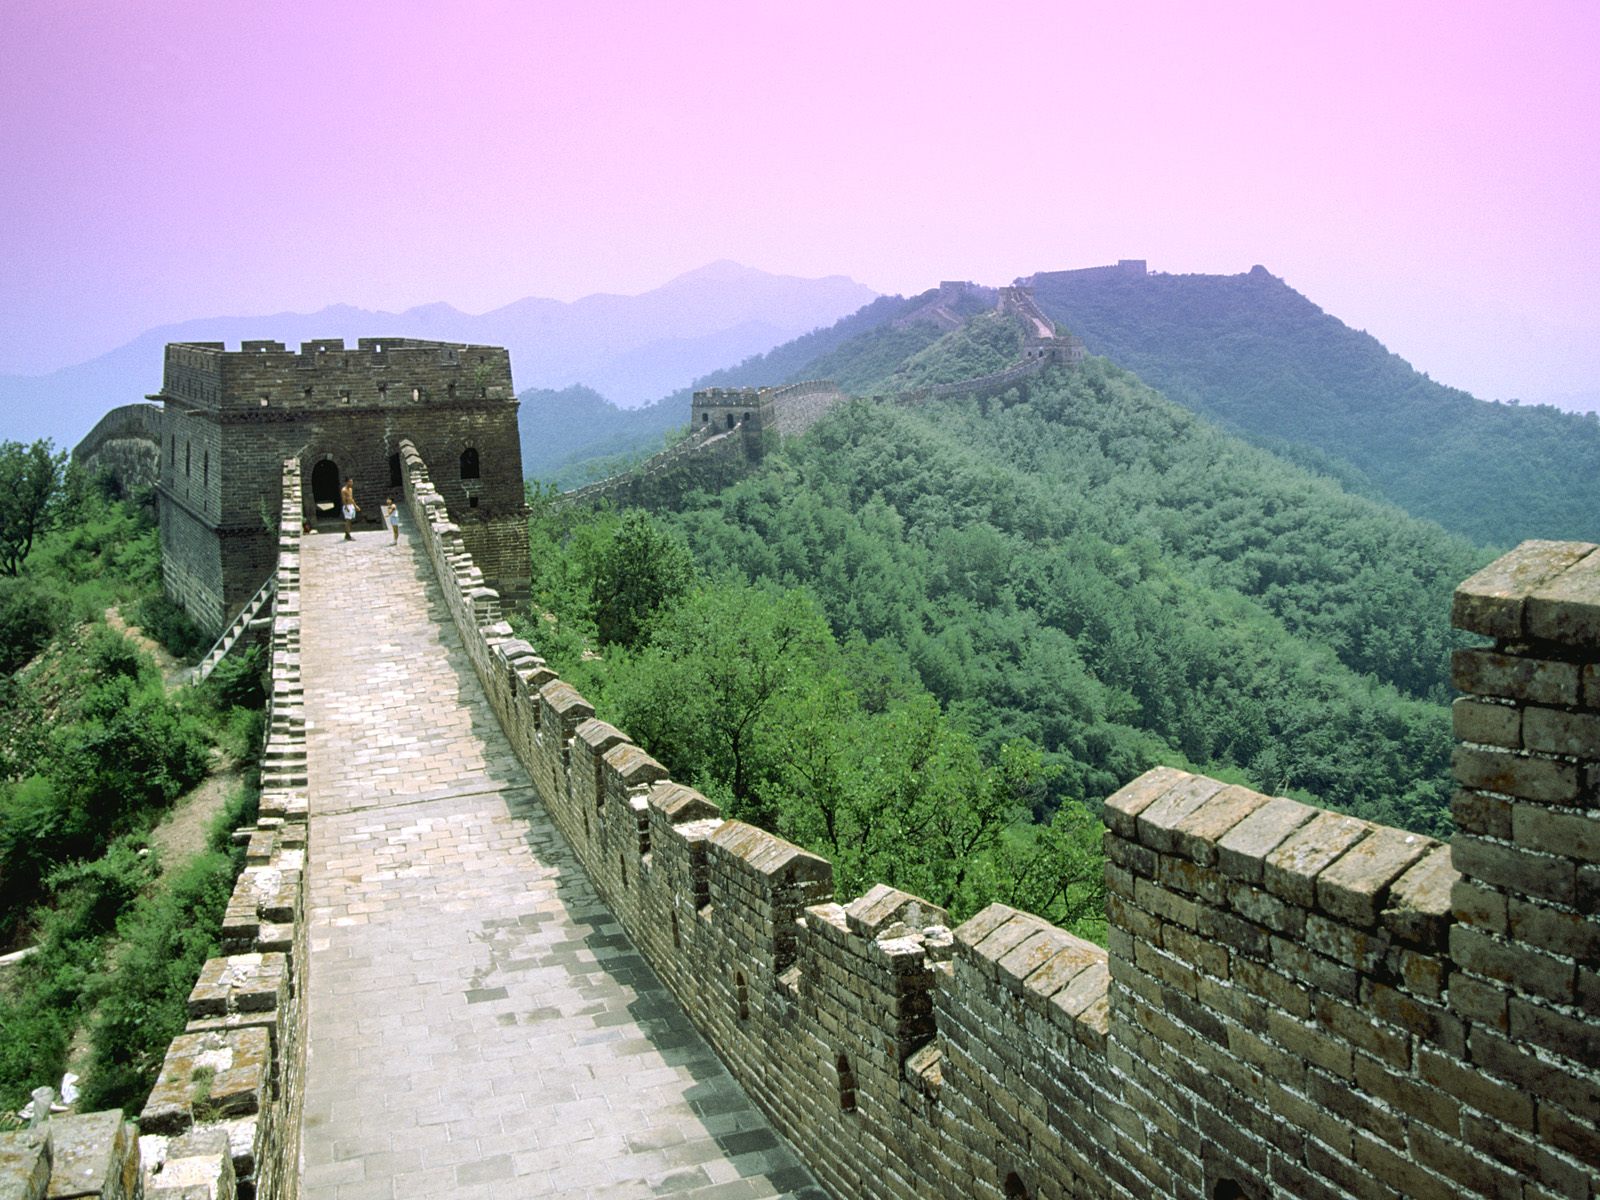 große wand aus china tapete,wand,bergstation,archäologische fundstätte,natürliche landschaft,befestigung